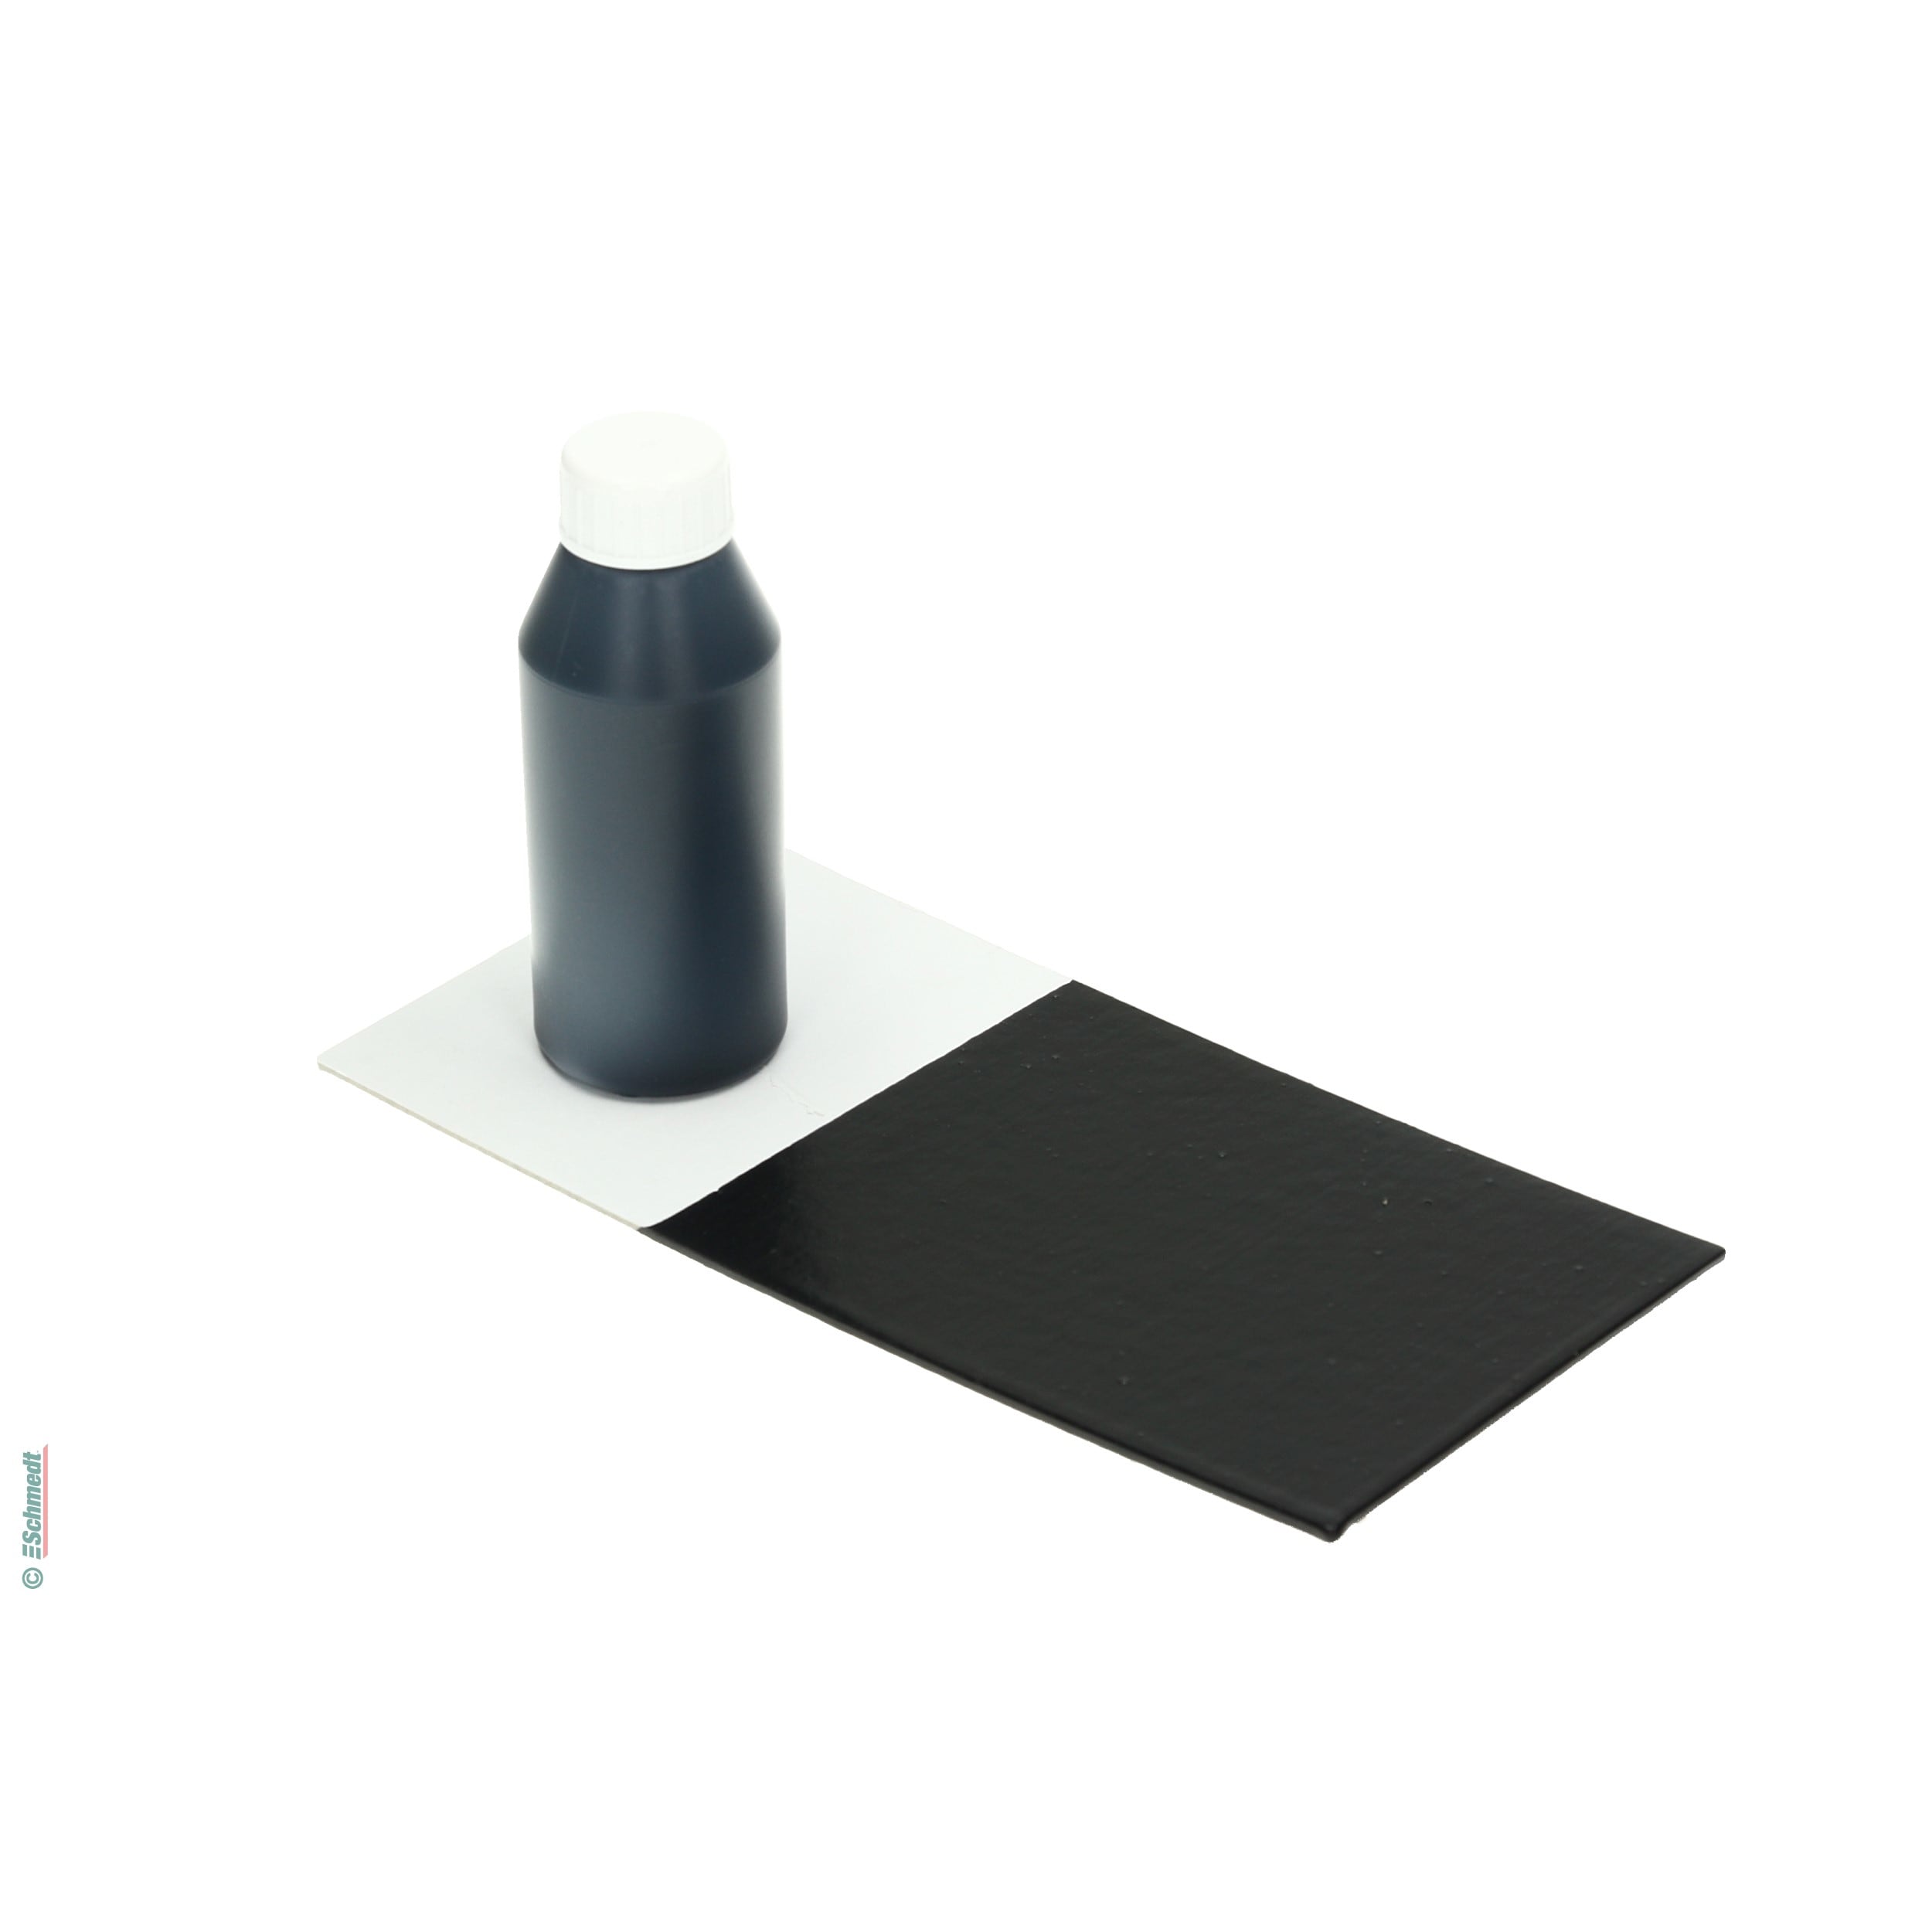 Peinture de colle - Couleur noir - Contenu Bouteille / 100 ml - pour teindre colles à dispersion comme p. ex. pour bloc-notes ou livres à do... - image-1